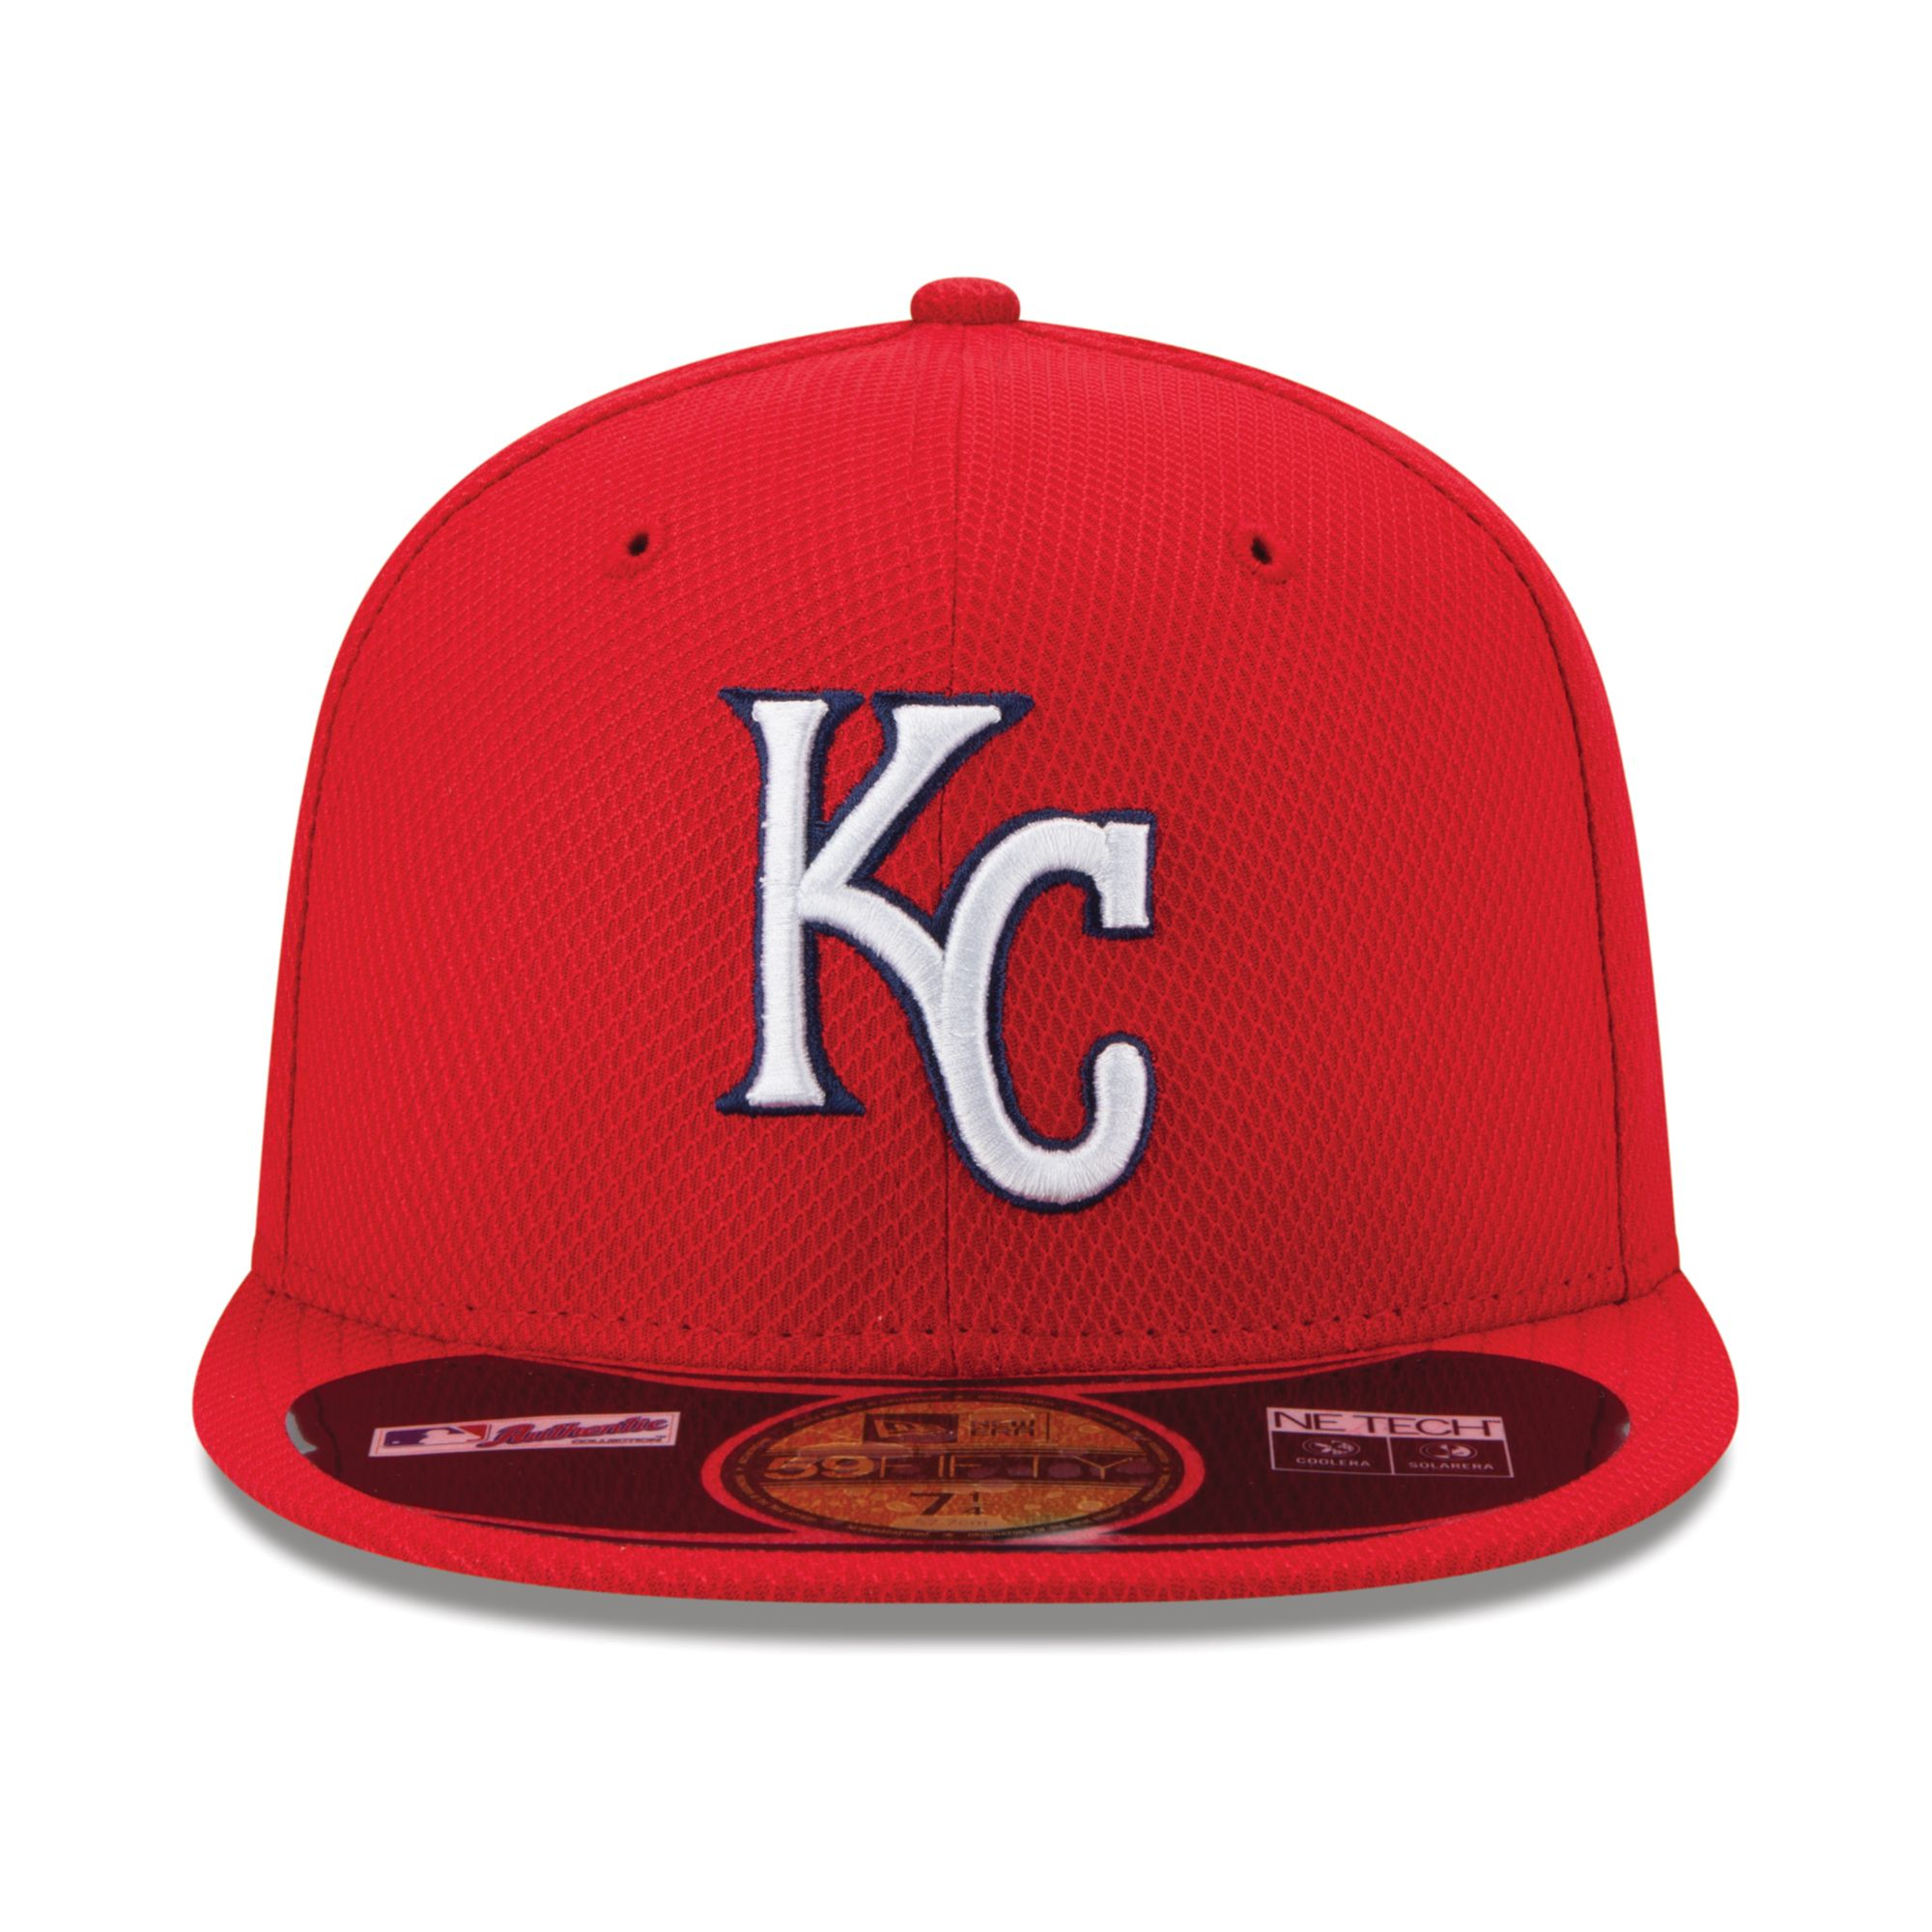 new era kc royals hat